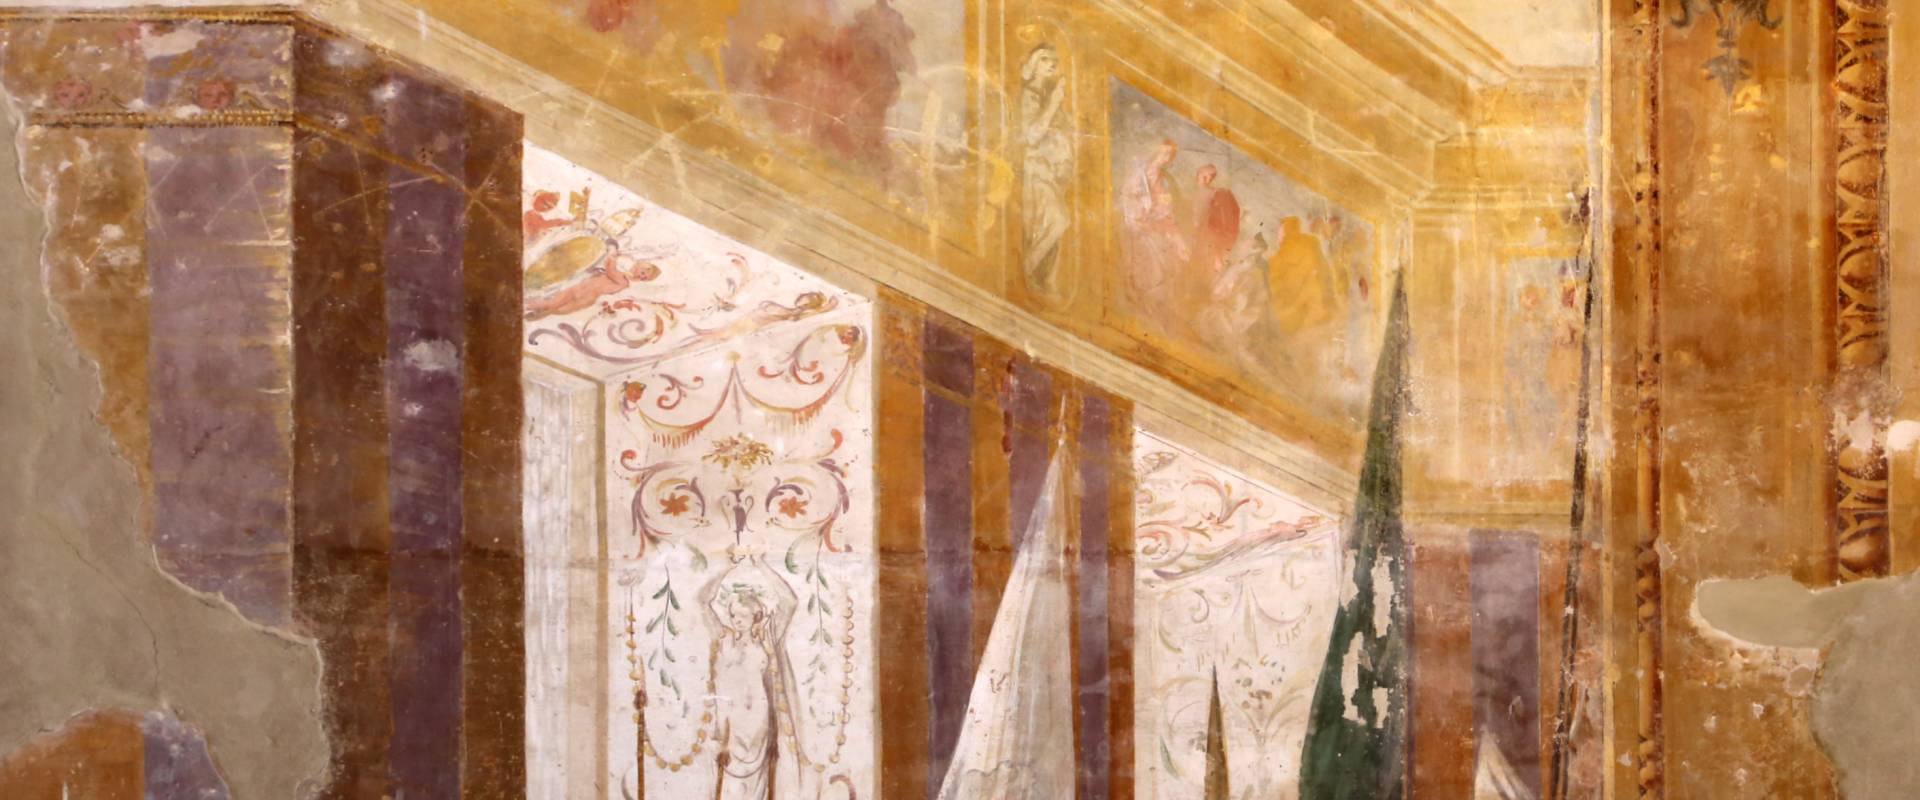 Giovanni da san giovanni (e ippolito provenzale), fasti bentivoglio, Investitura di Cornelio Bentivoglio a generalissimo di Gregorio XIII, 1628, 13 fregio foto di Sailko